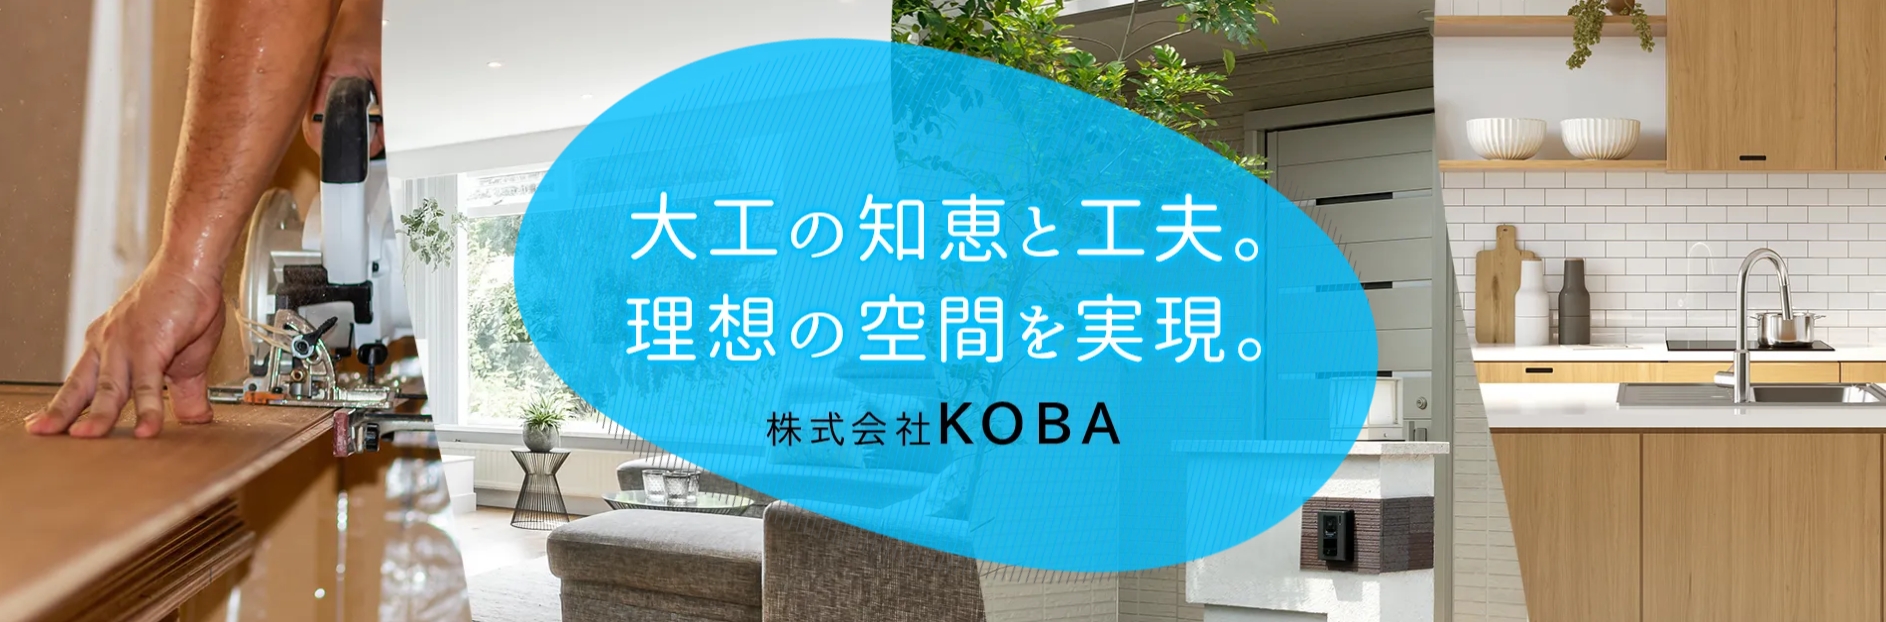 株式会社KOBAメイン画像